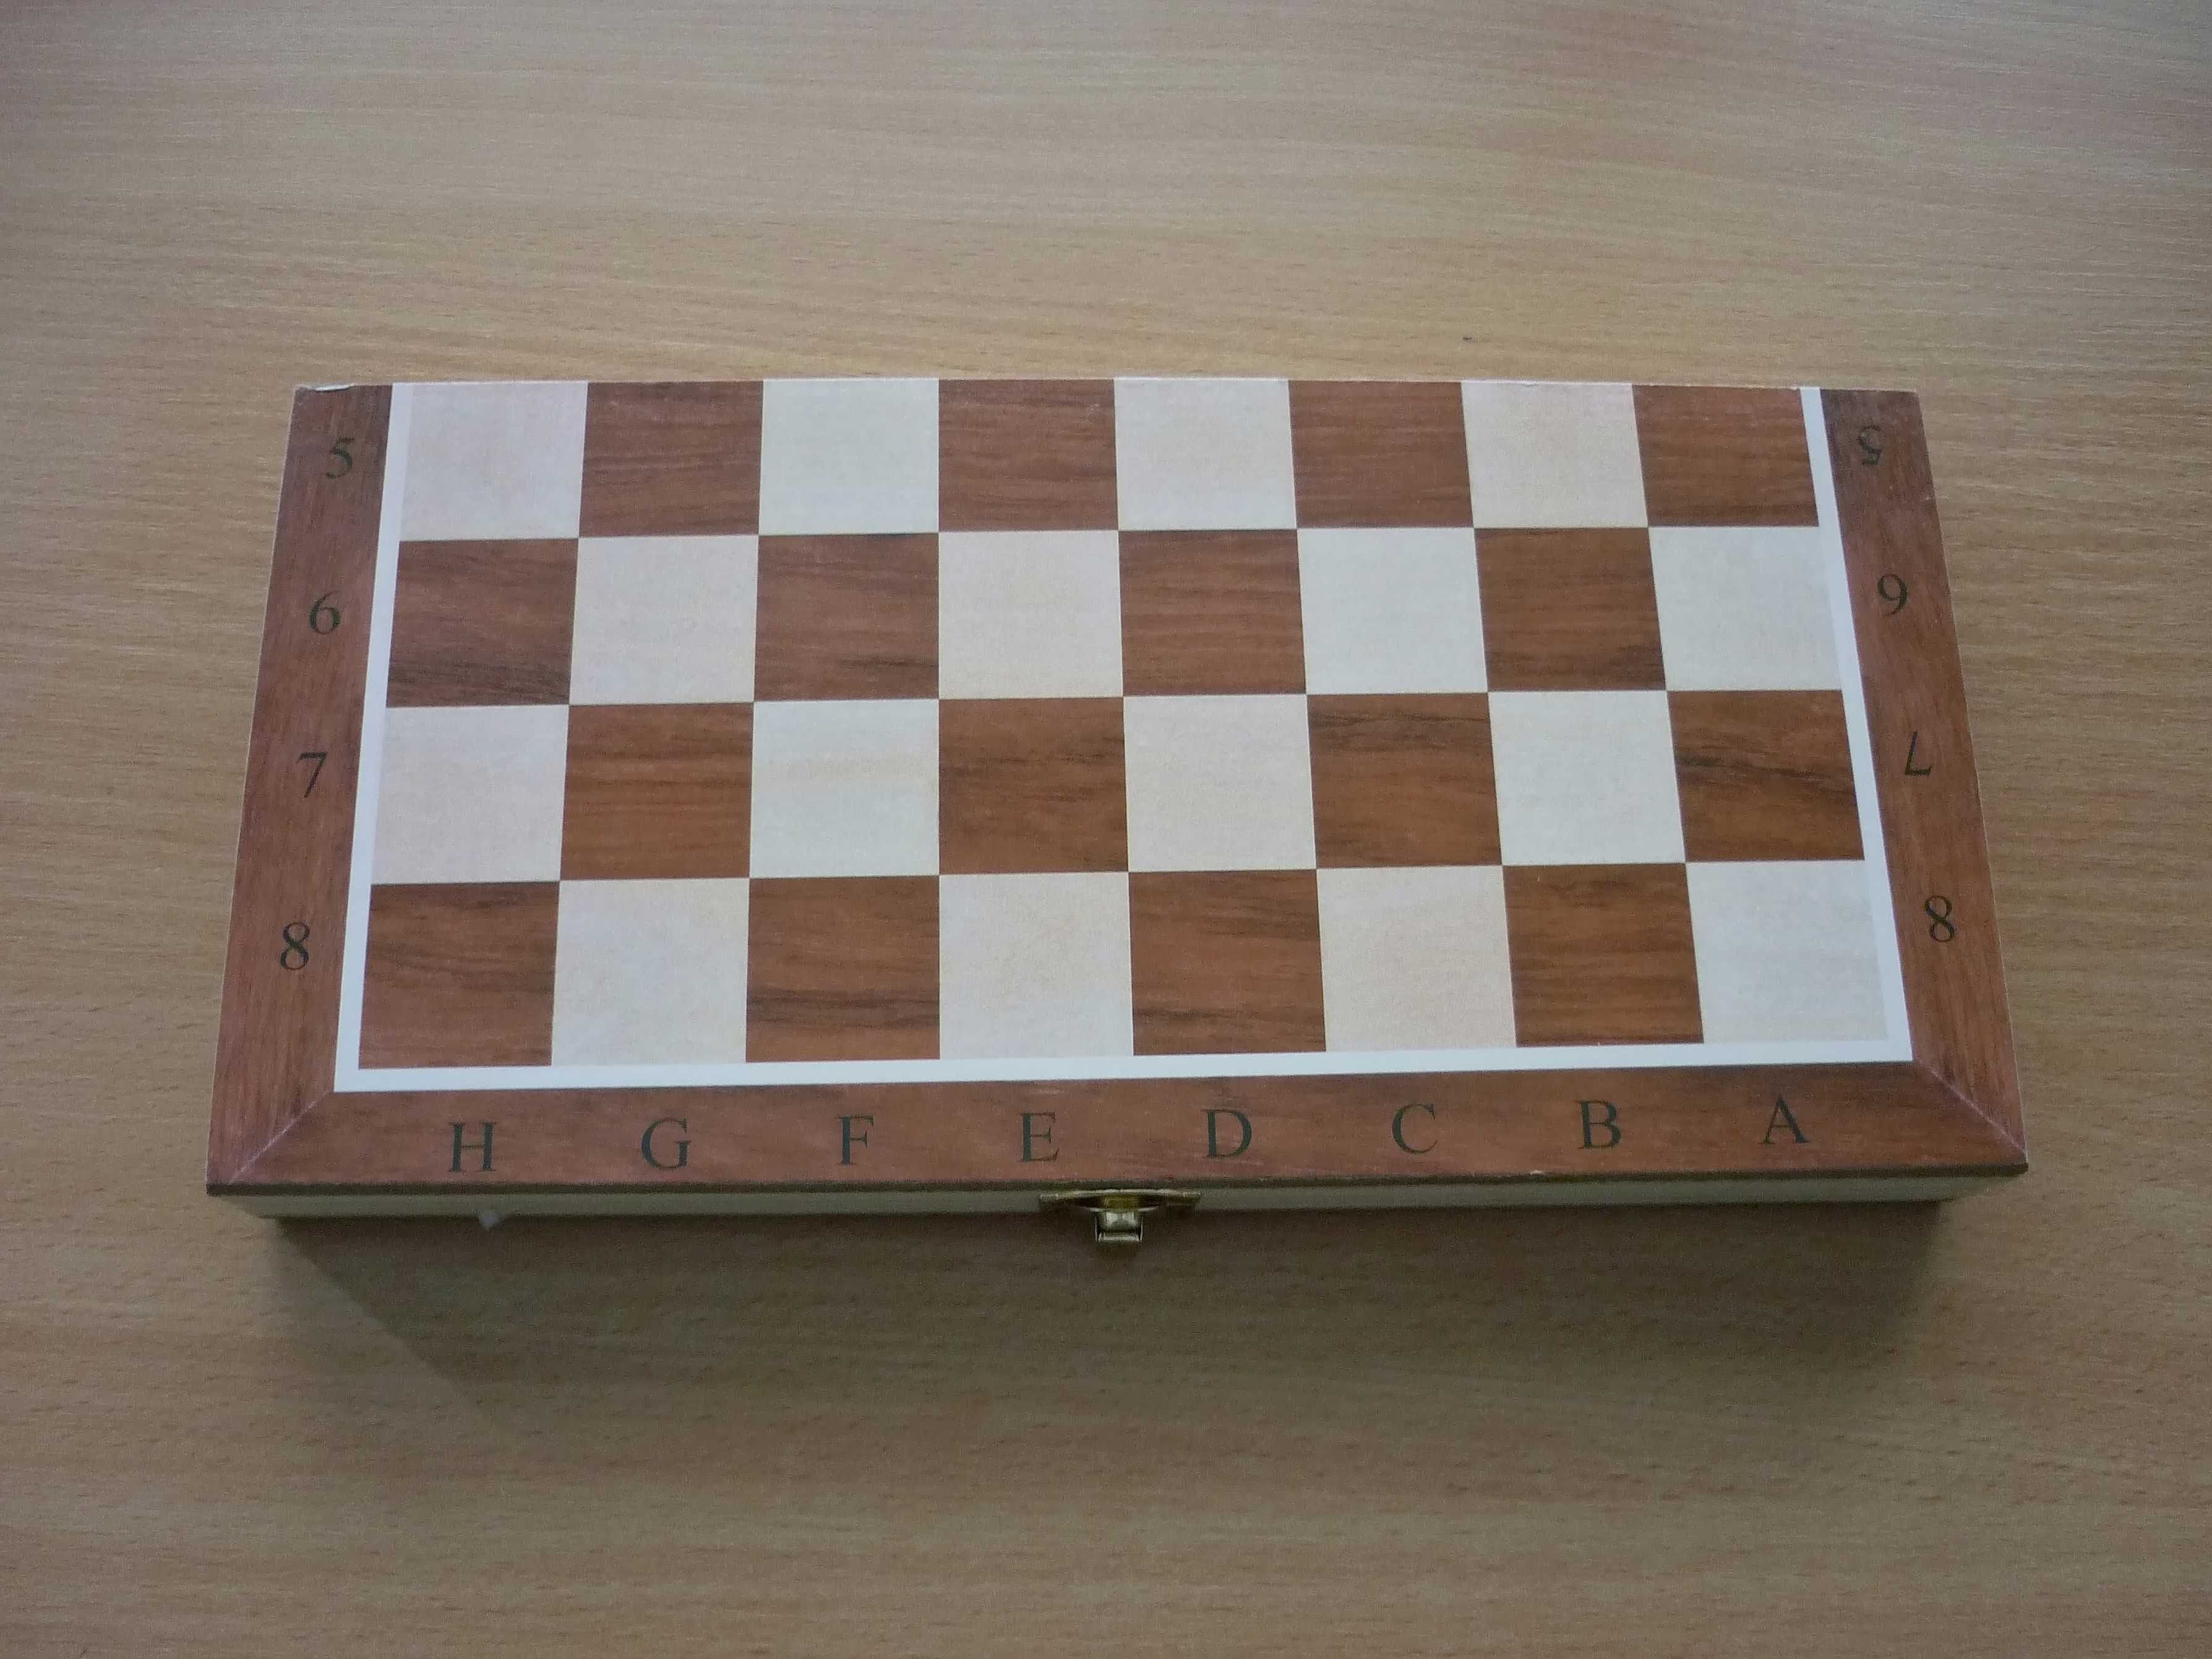 Набор шахматы , нарды, размер 24-12-3,5 см